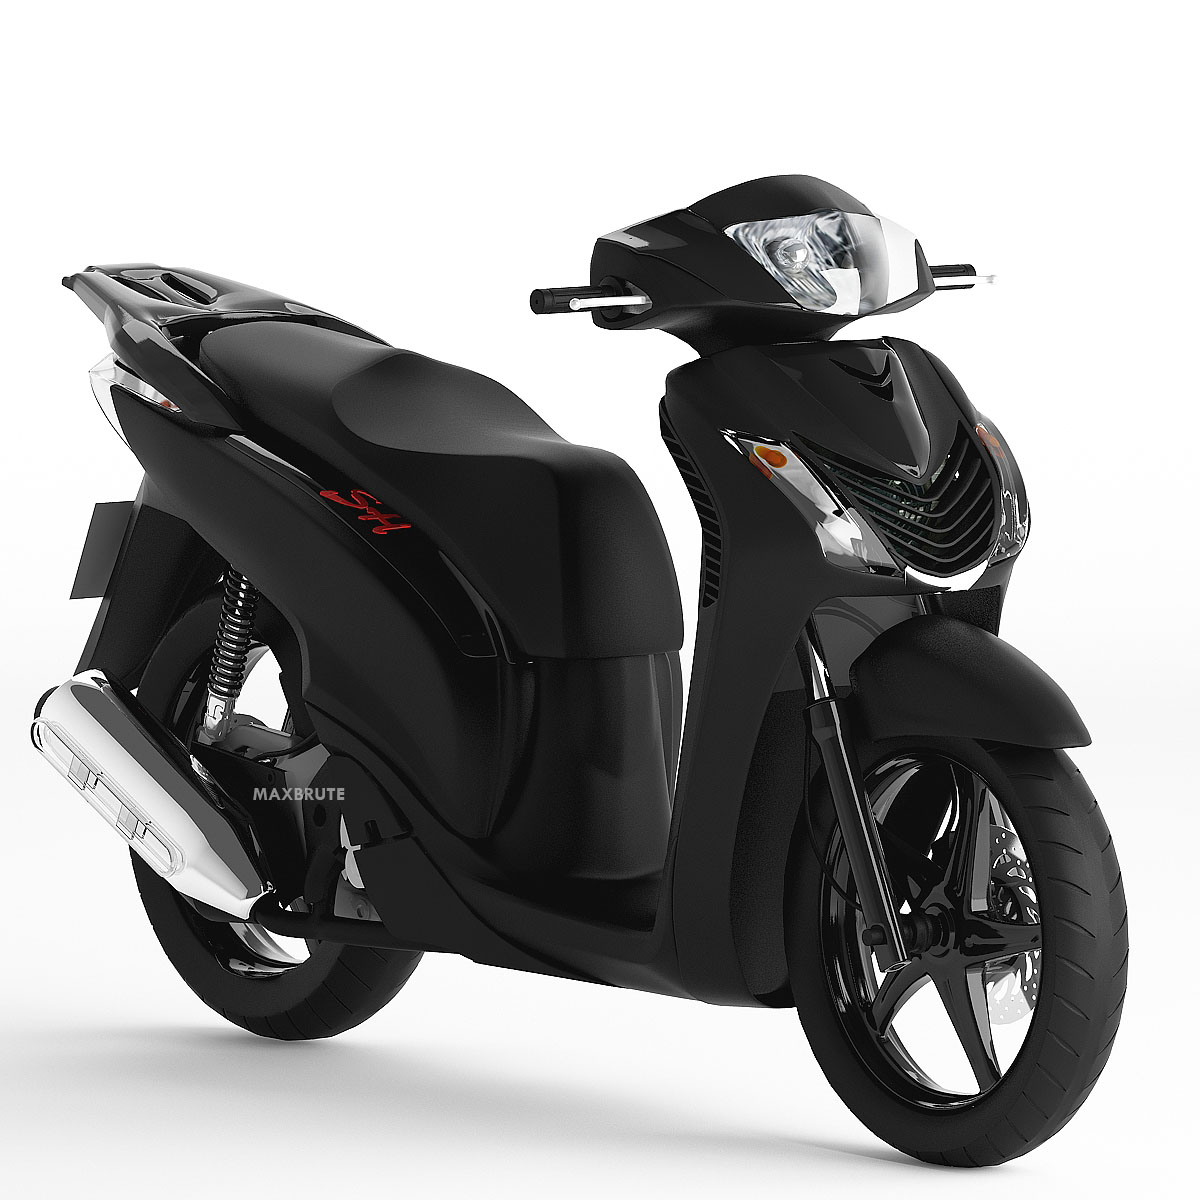 Motorcycle xe máy 3dsmax Sketchup SH 150i Black đen mờ - Maxbrute